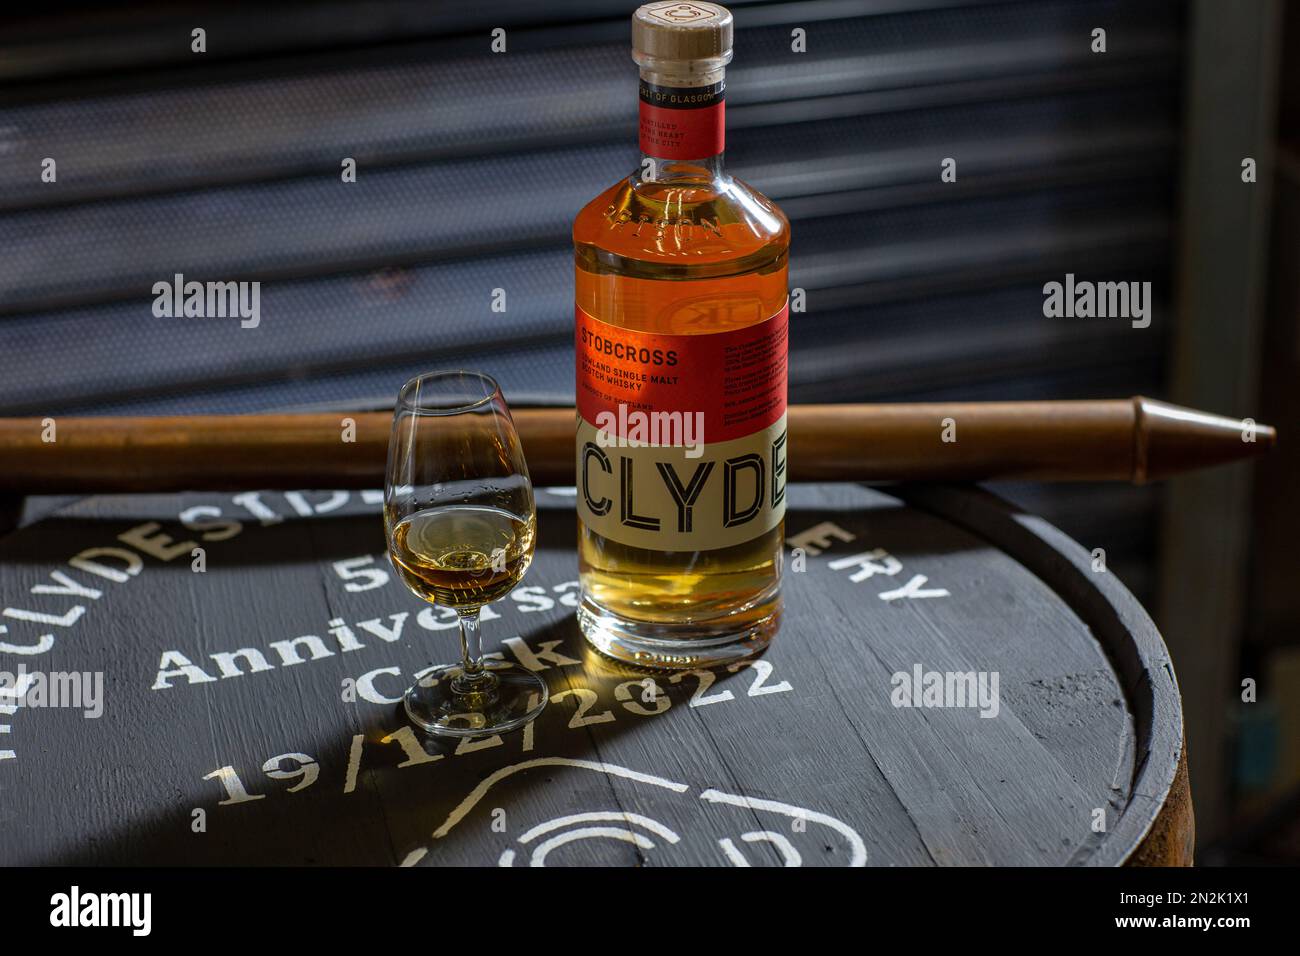 Bouteille de whisky single malt Clydeside avec flacon en verre et outil d'échantillonnage en fût à alcool de valinch de cuivre à la distillerie Clydeside de Glasgow, en Écosse. Banque D'Images